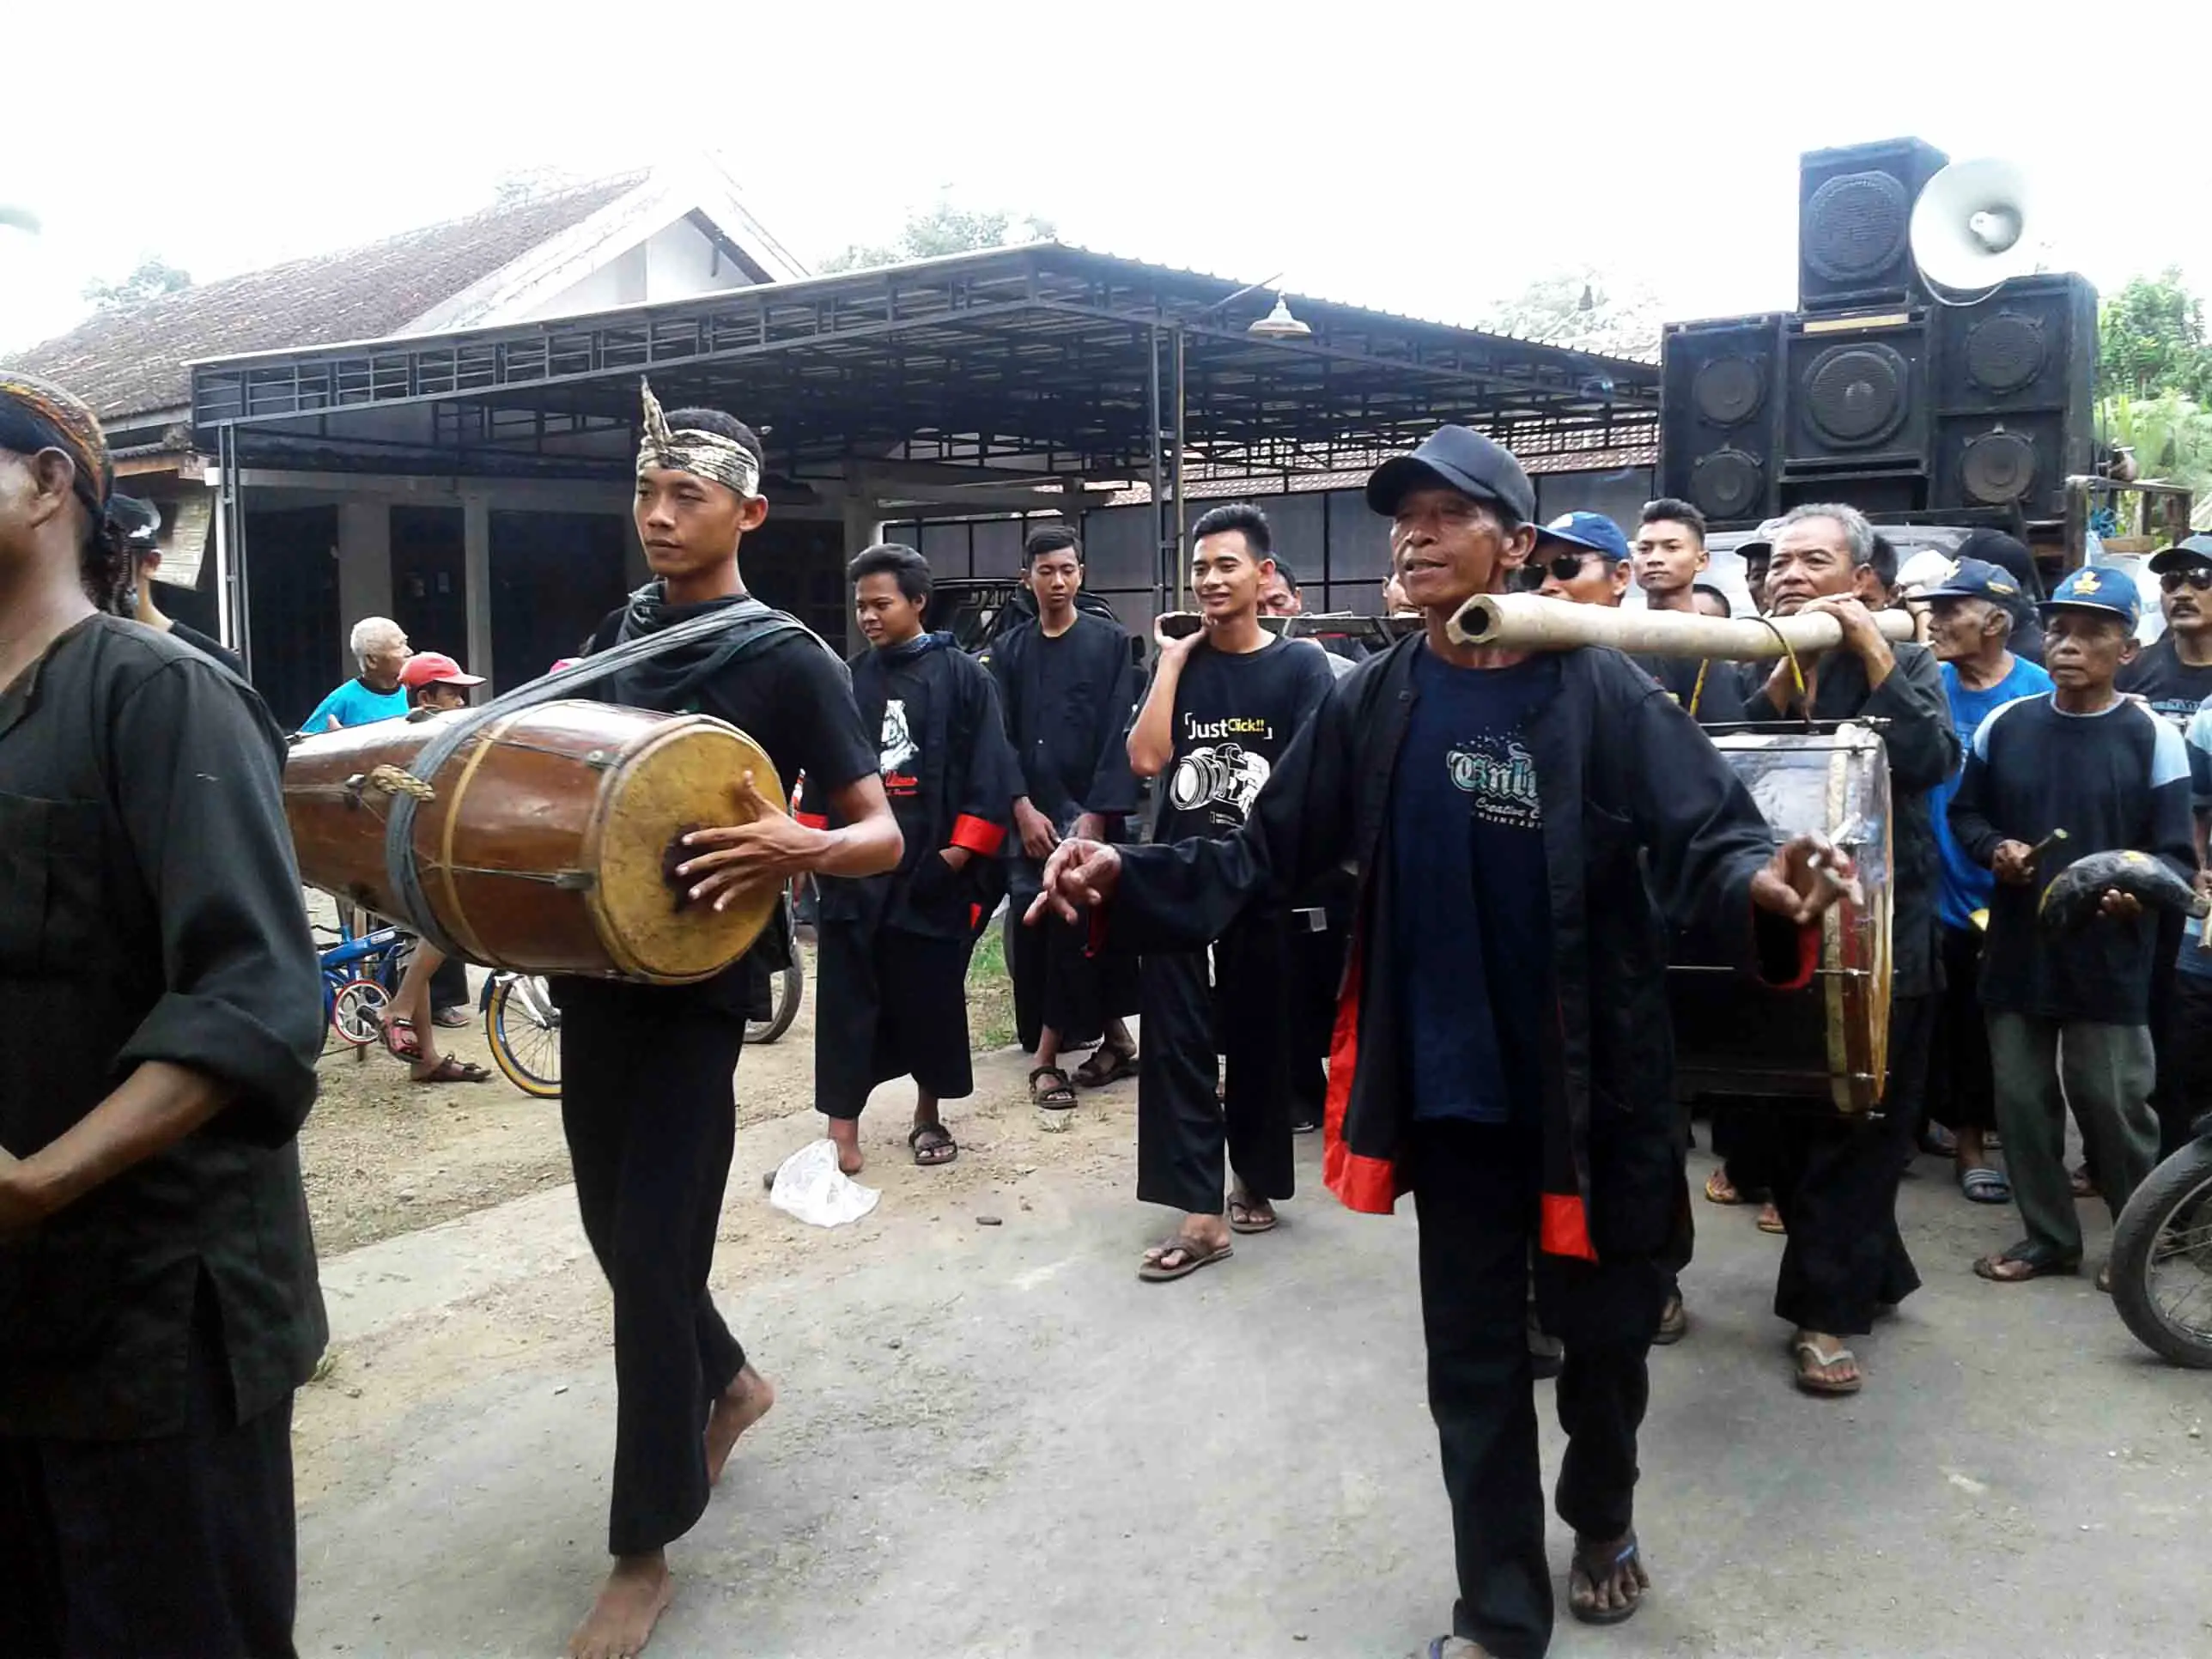 Seperangkat alat musik pendukung dongkrek, kesenian khas Madiun, Jawa Timur. (Liputan6.com/Dian Kurniawan)